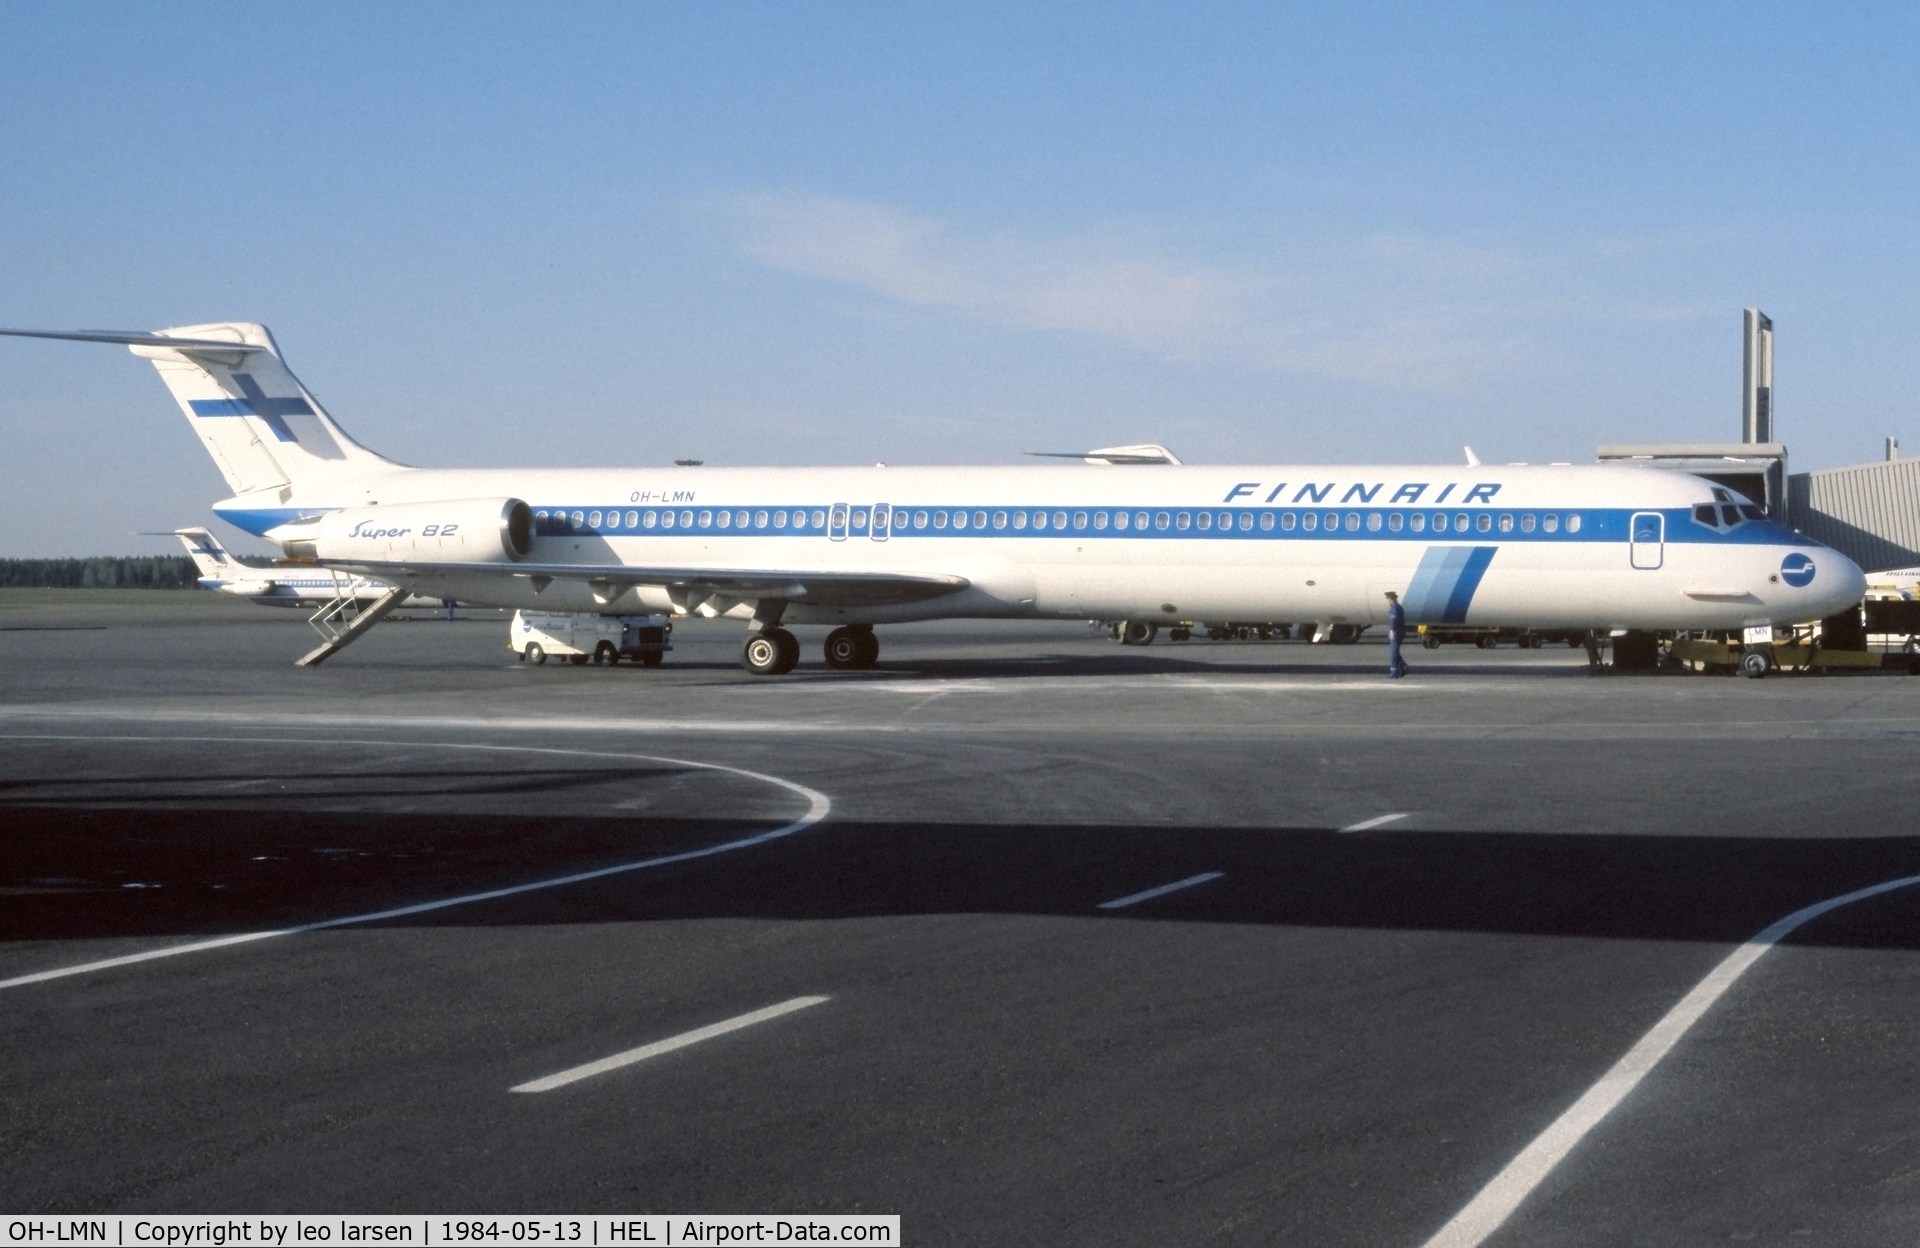 OH-LMN, 1982 McDonnell Douglas MD-82 (DC-9-82) C/N 49150, Helsinki 13.5.1984